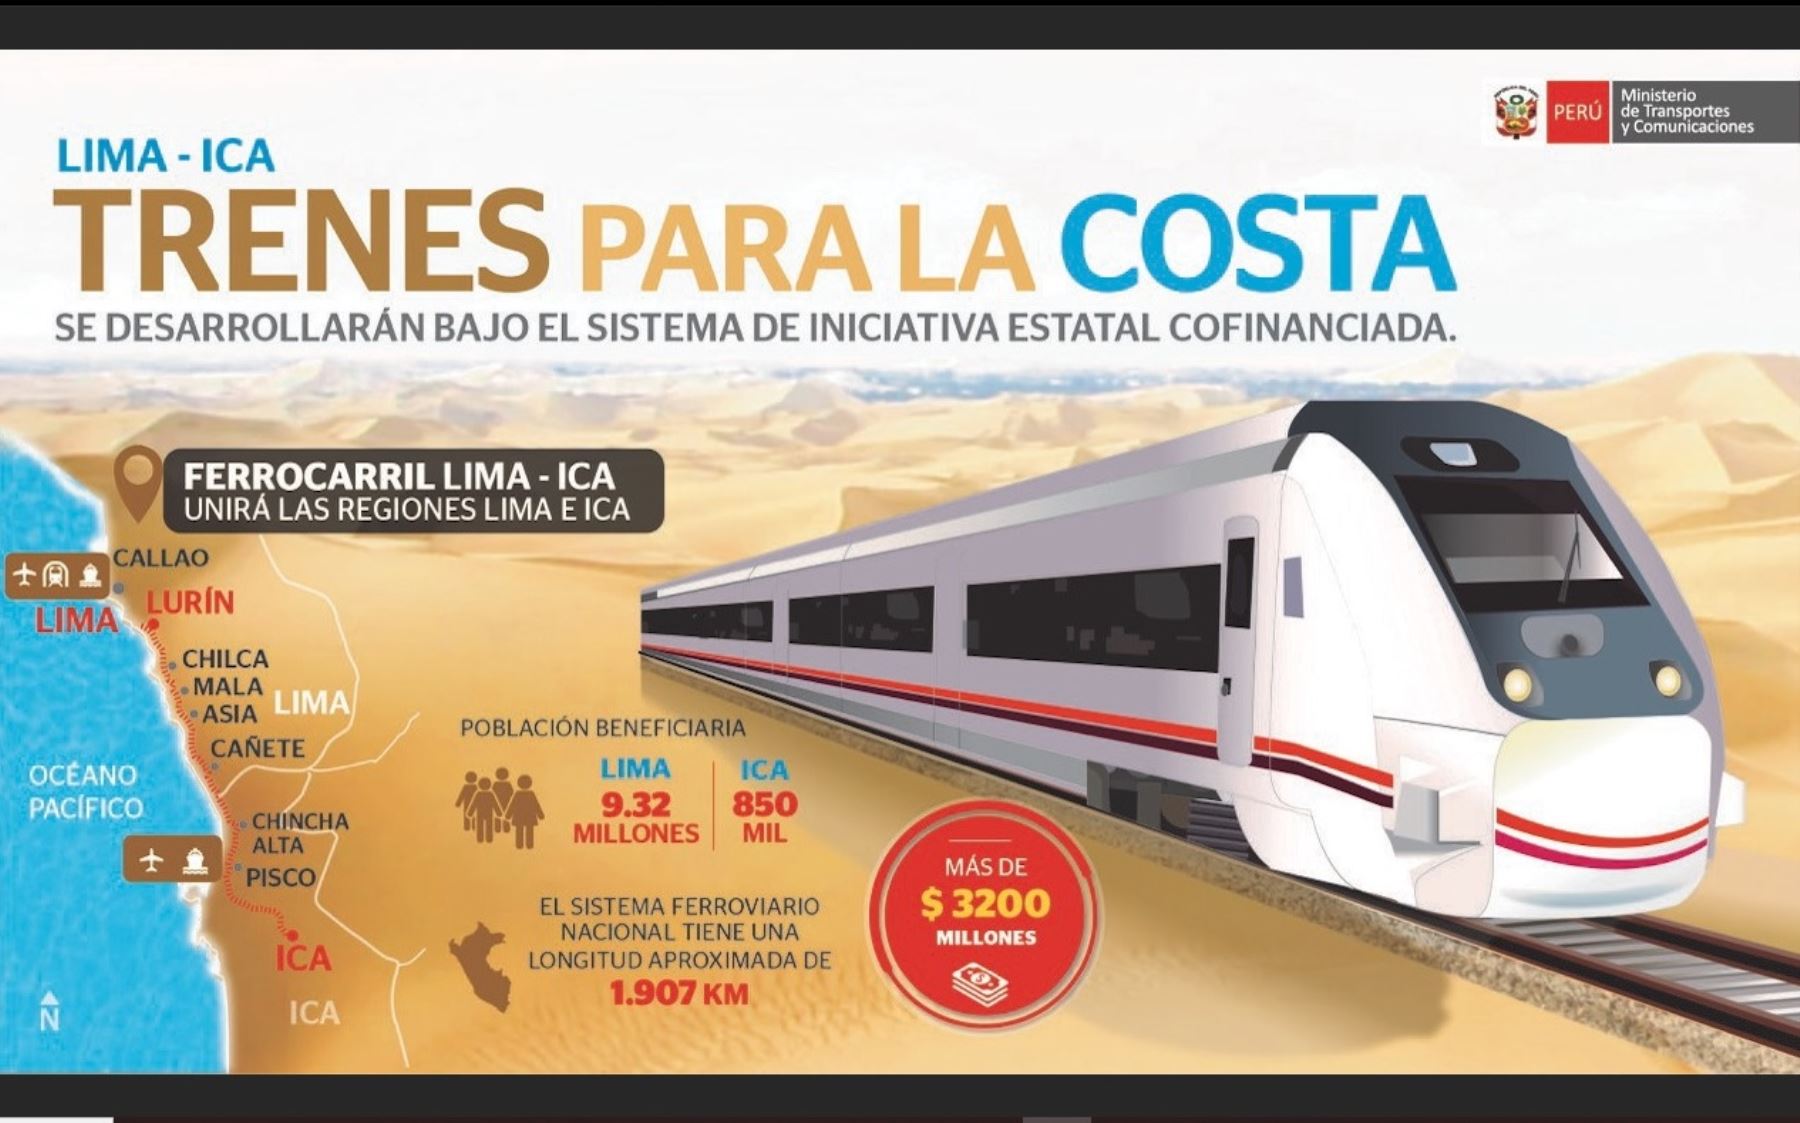 El denominado Tren de Cercanías, que unirá Lima e Ica, beneficiará a 969,000 habitantes de Lima, Barranco, Cañete, Chinca e Ica. Foto: ANDINA/Difusión